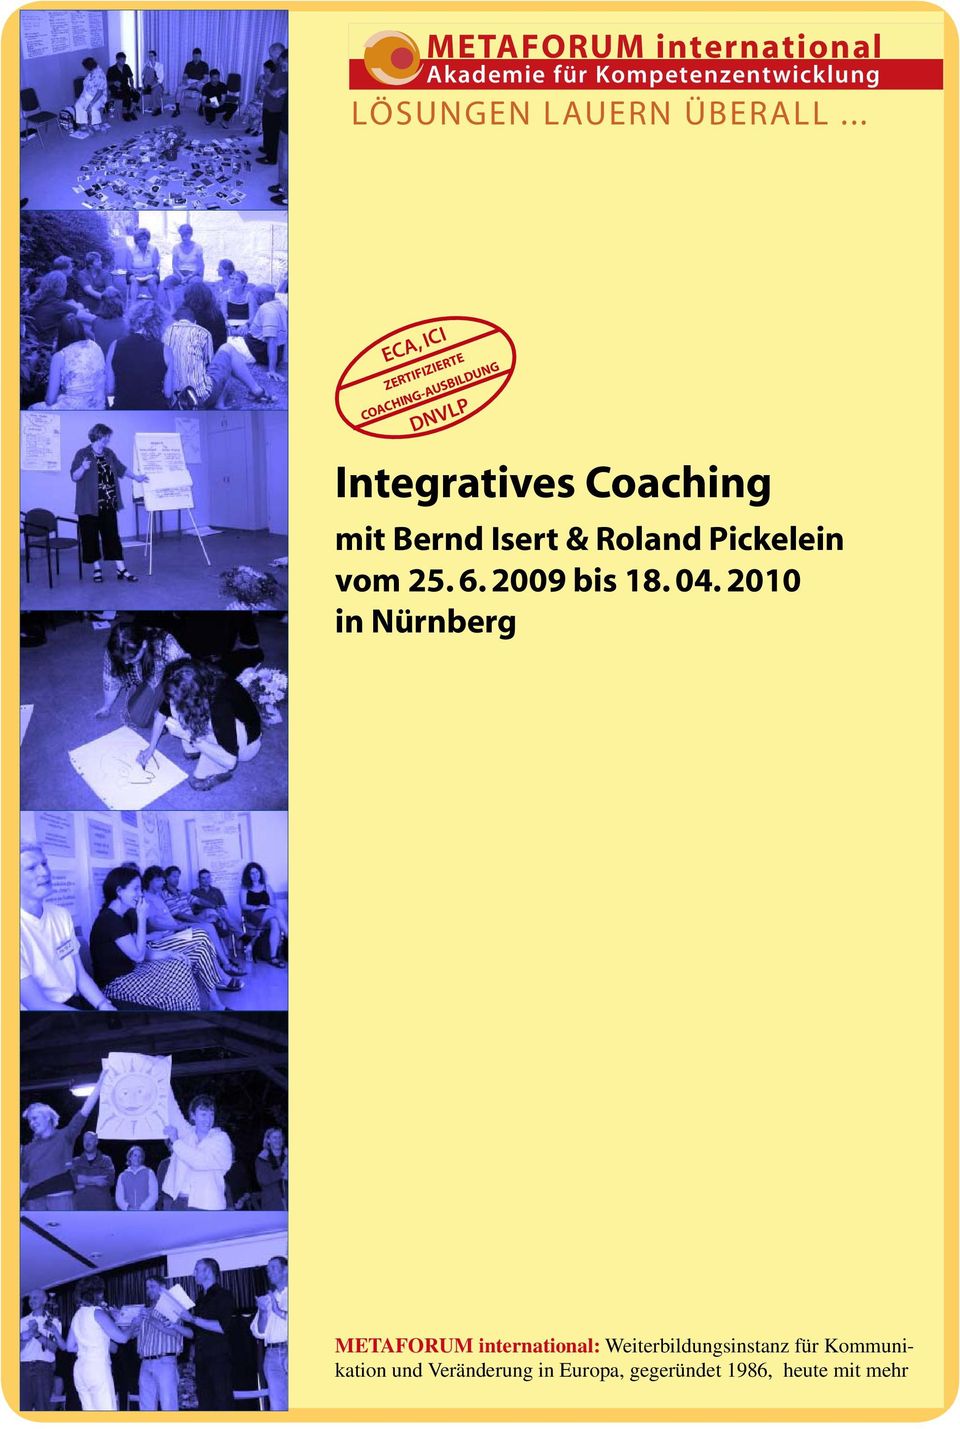 Coaching mit Bernd Isert & Roland Pickelein vom 25. 6. 2009 bis 18.